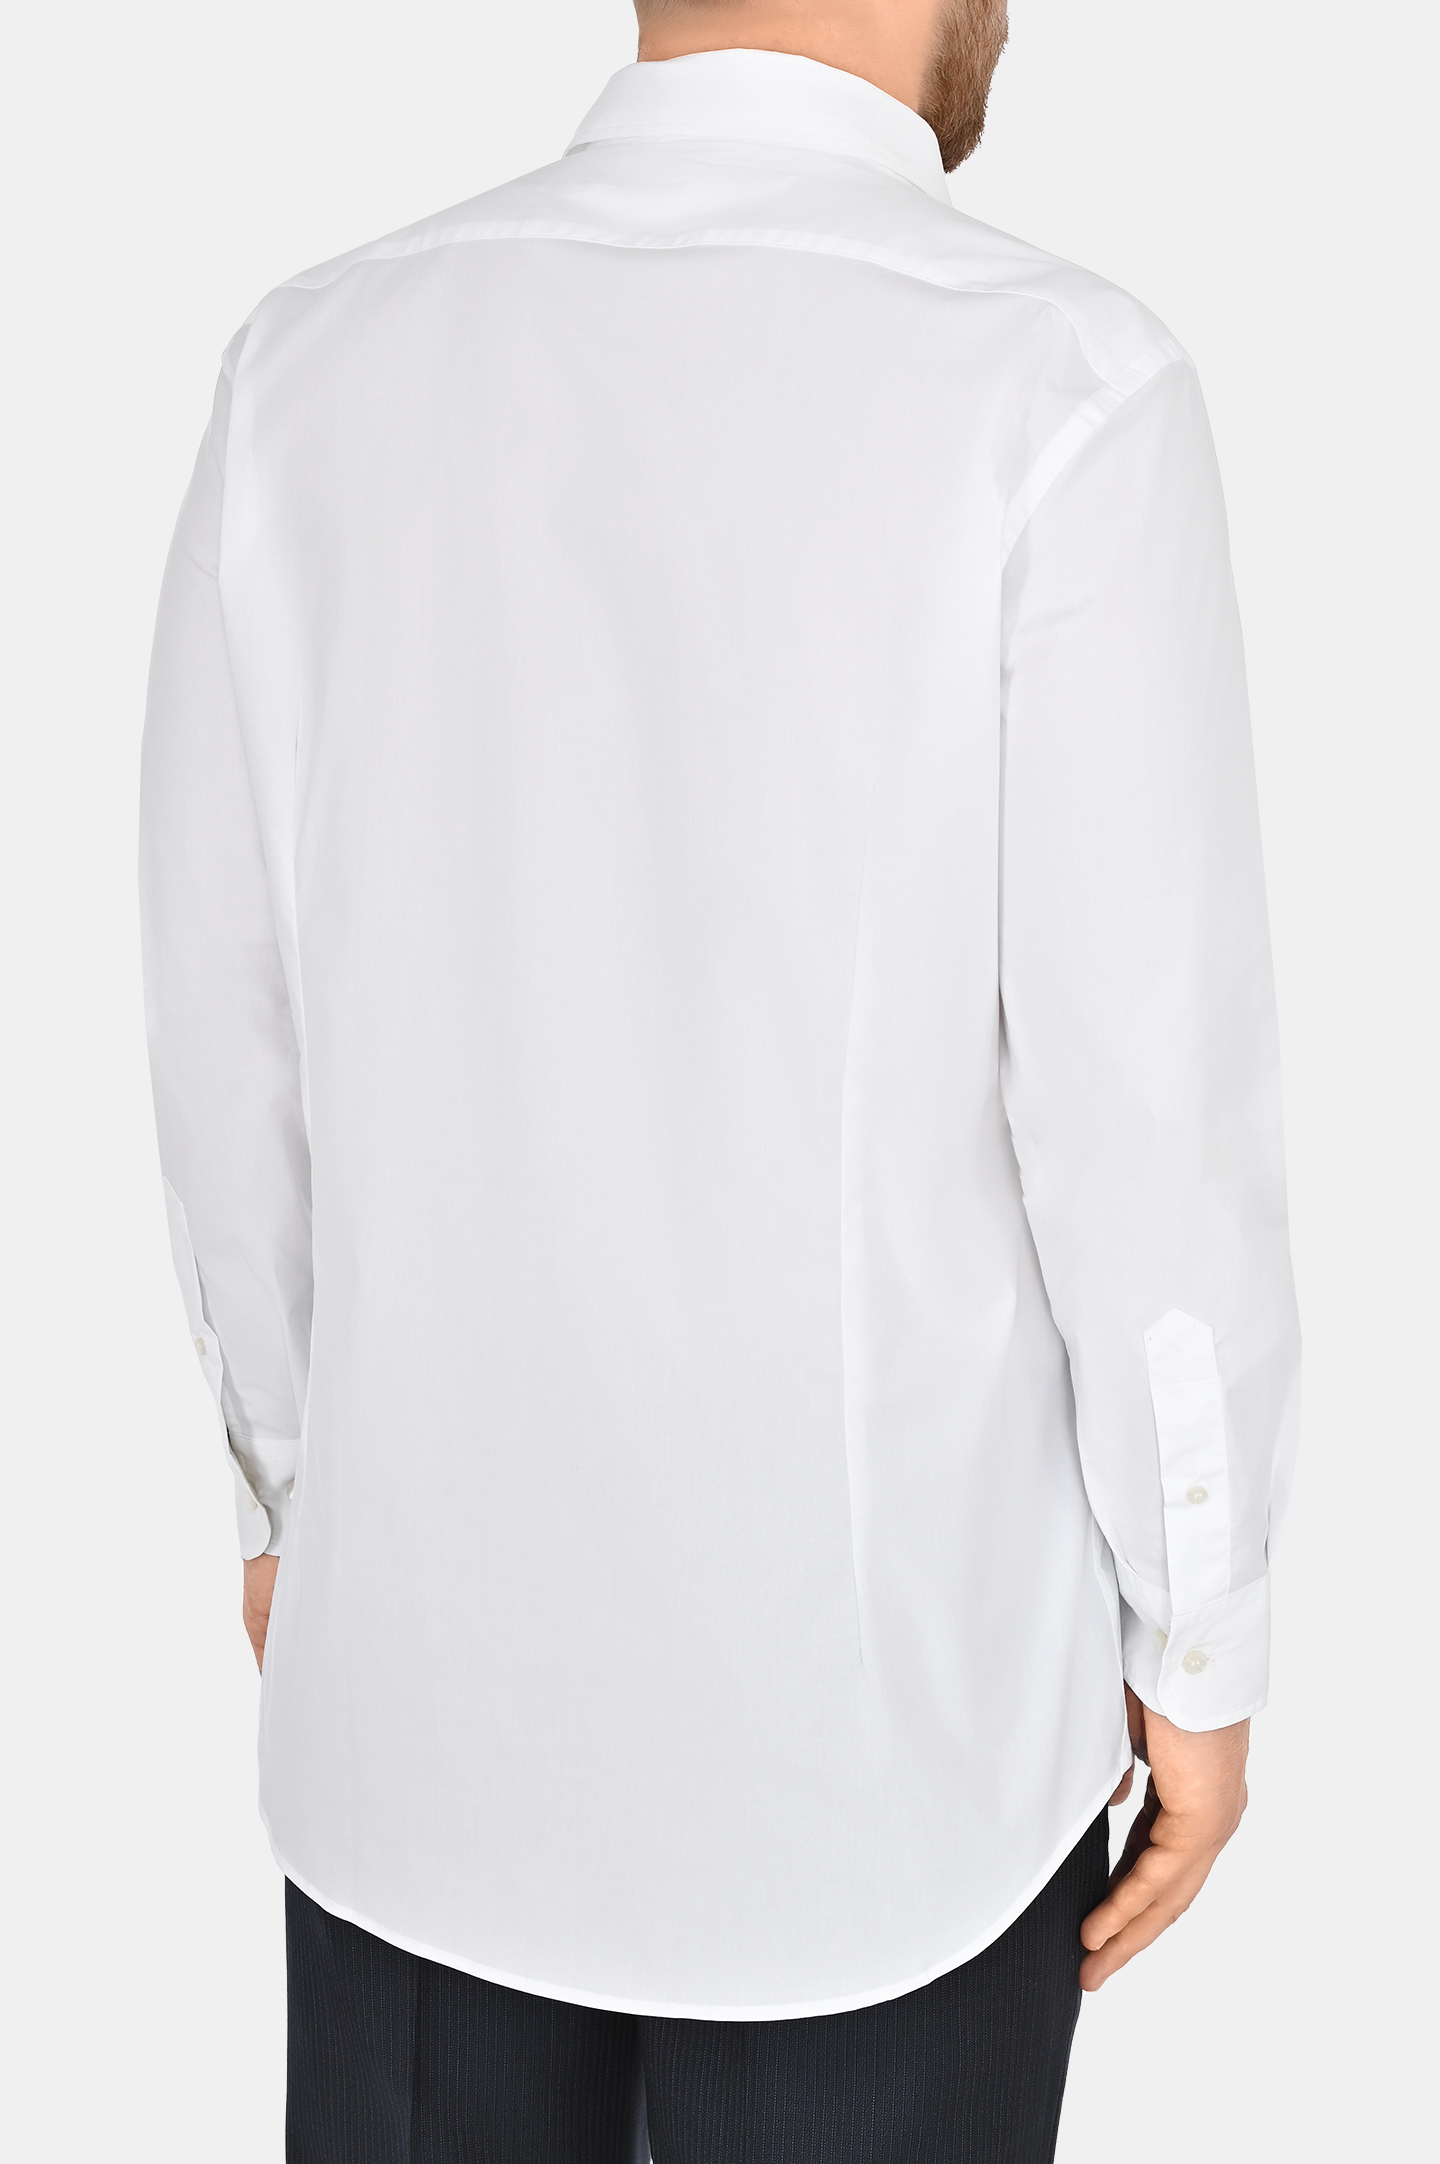 Рубашка из хлопка и эластана ETRO MRIB0001 AV202, цвет: Белый, Мужской